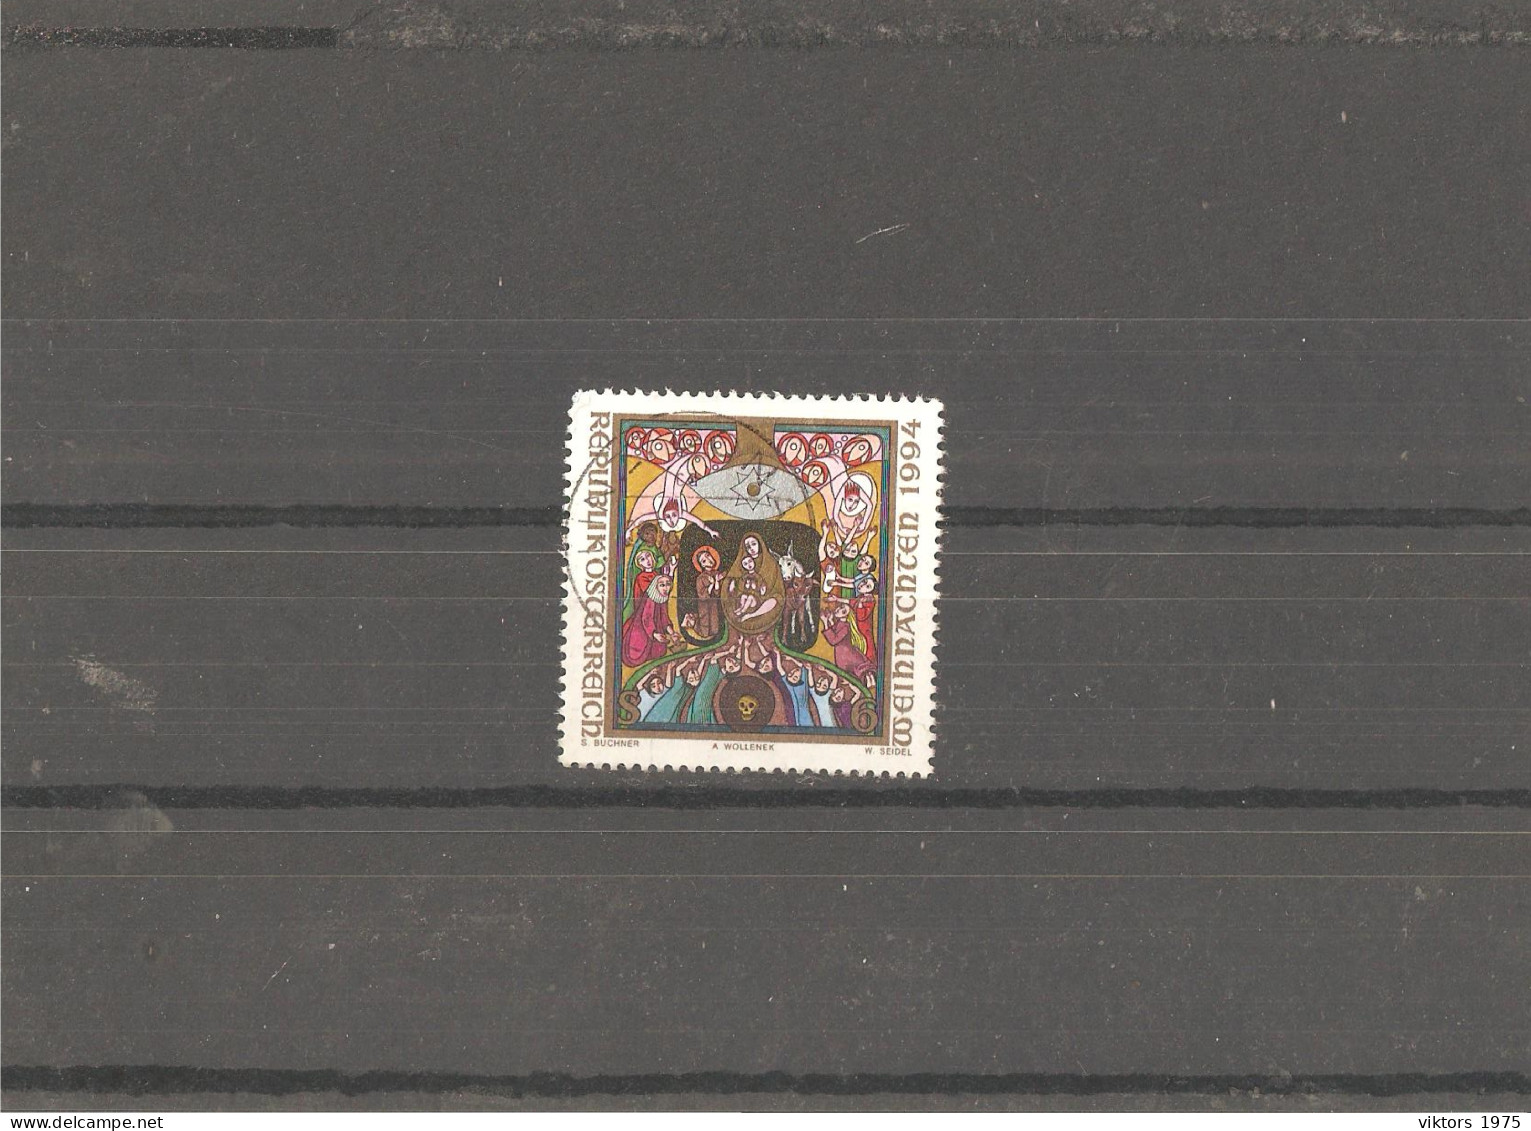 Used Stamp Nr.2144 In MICHEL Catalog - Usati